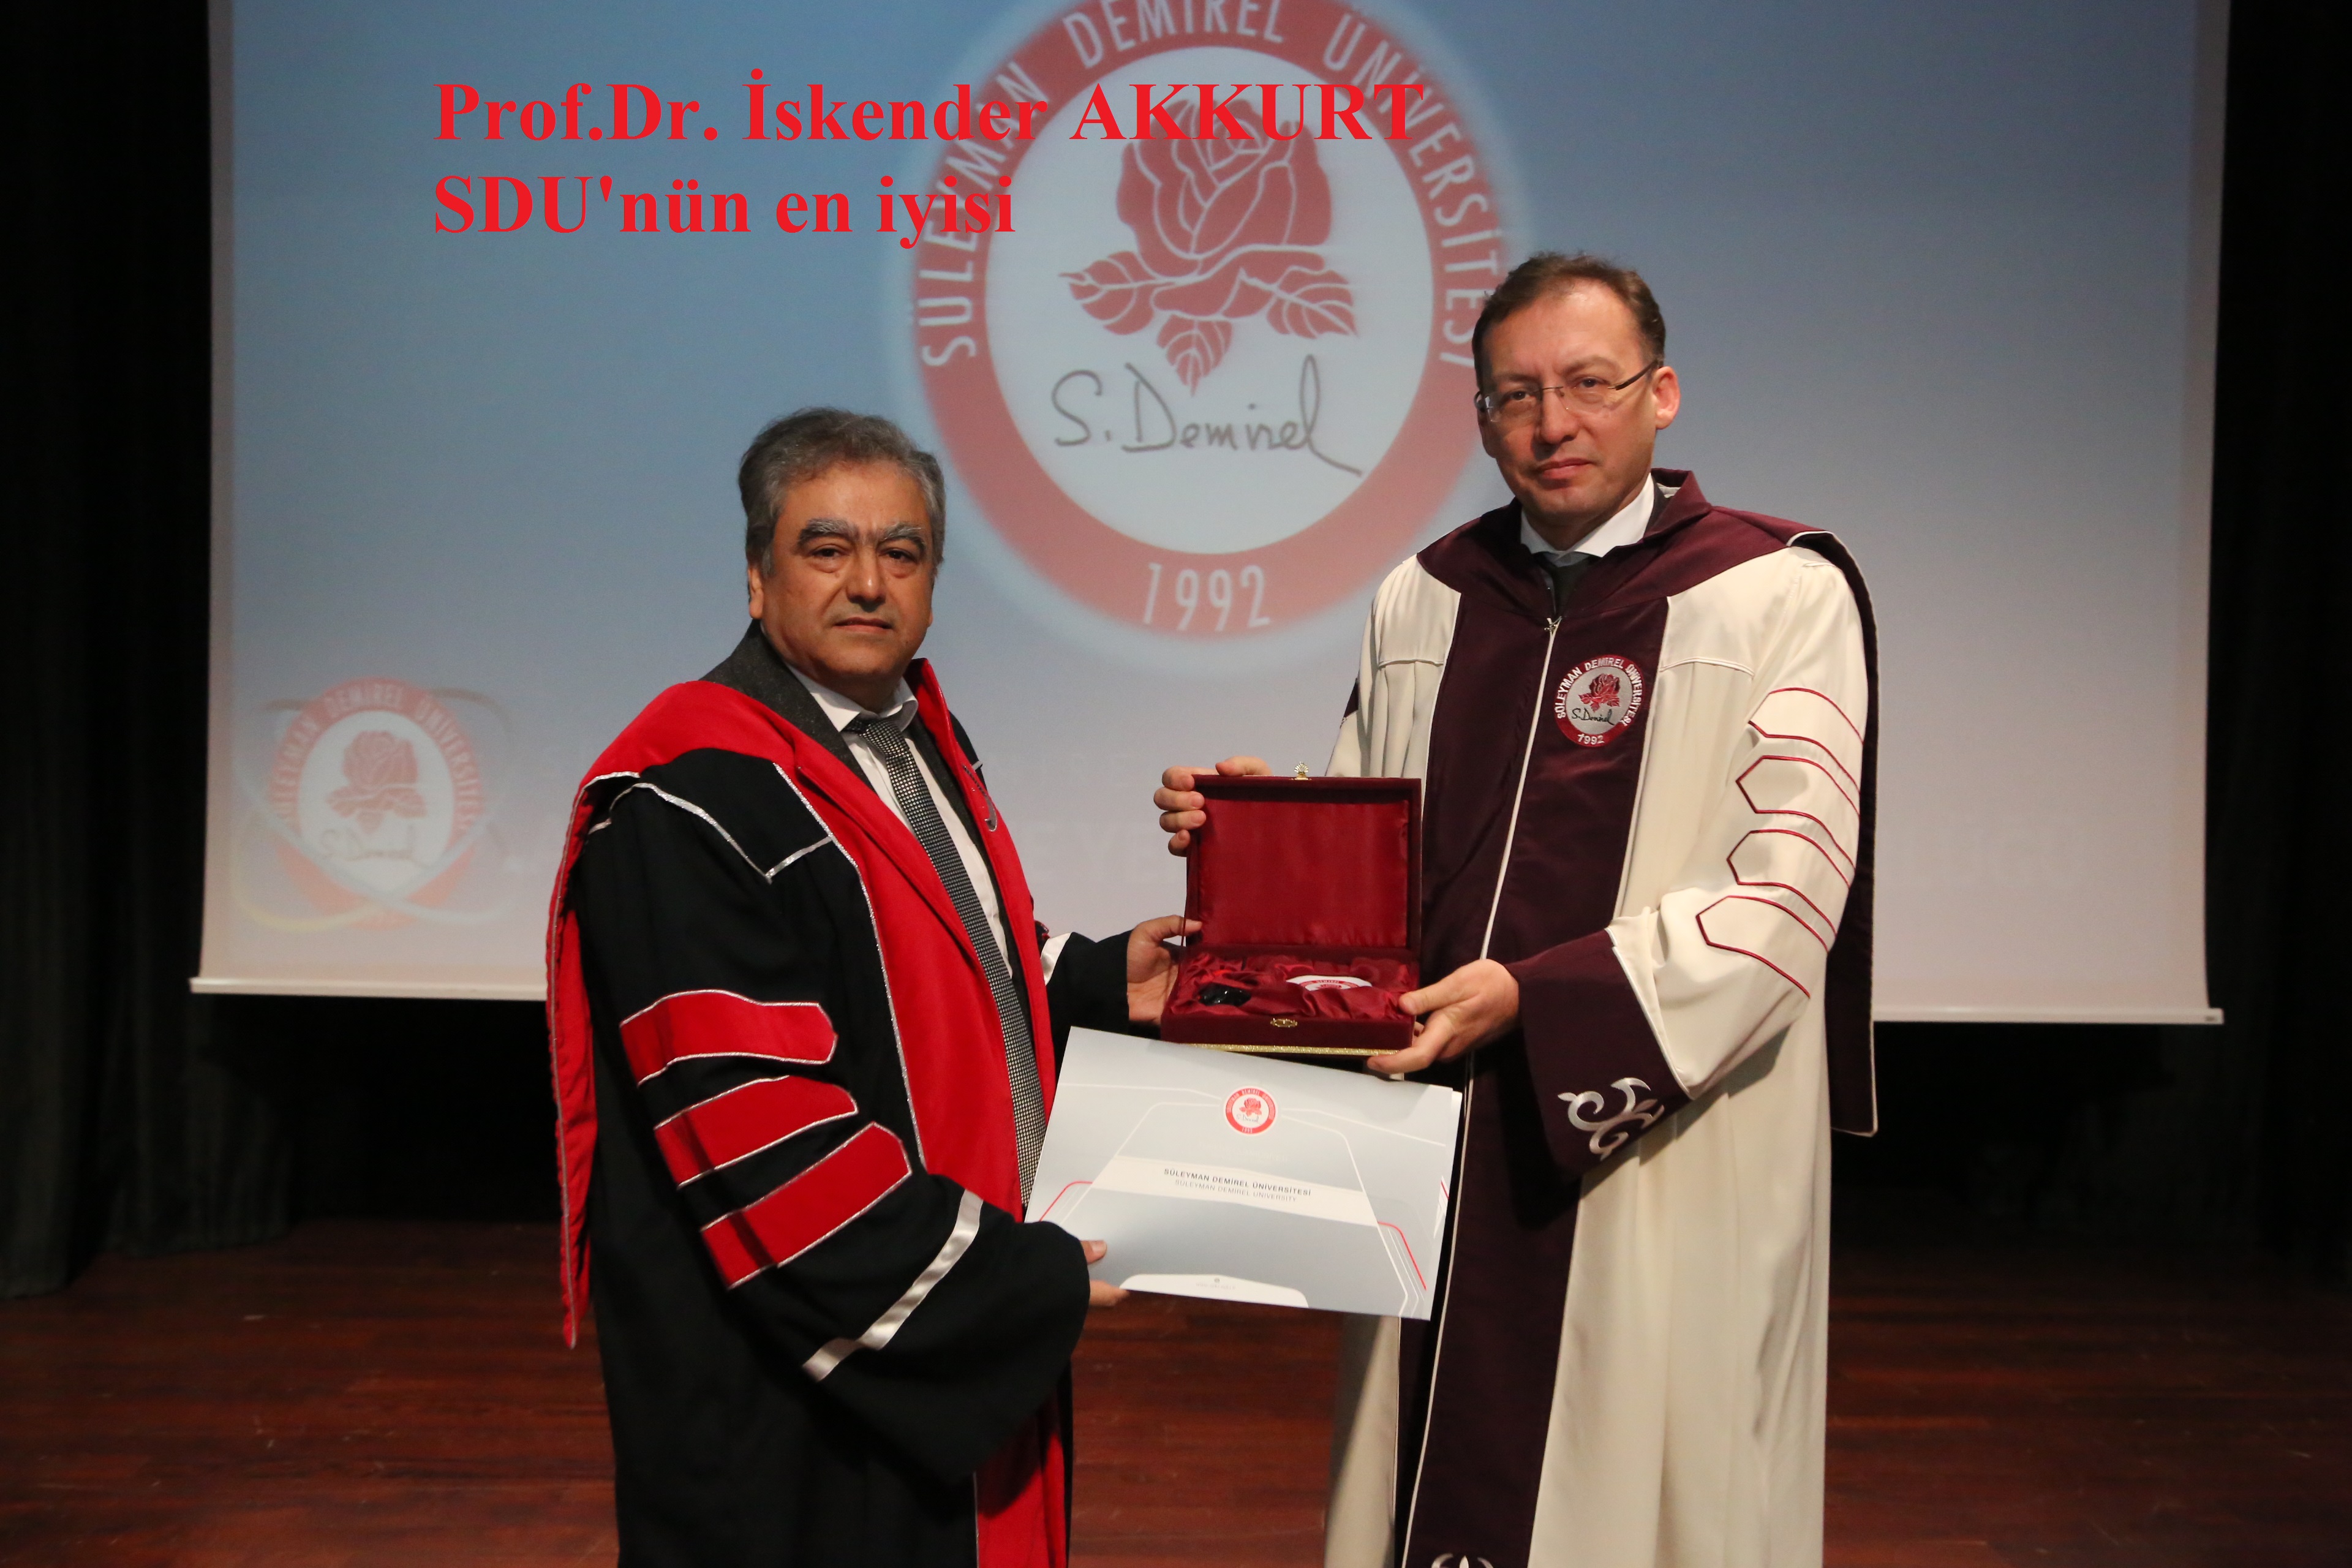 Prof.Dr. Iskender AKKURT Süleyman Demirel Üniversitesi Bilim ödülünü kazandı